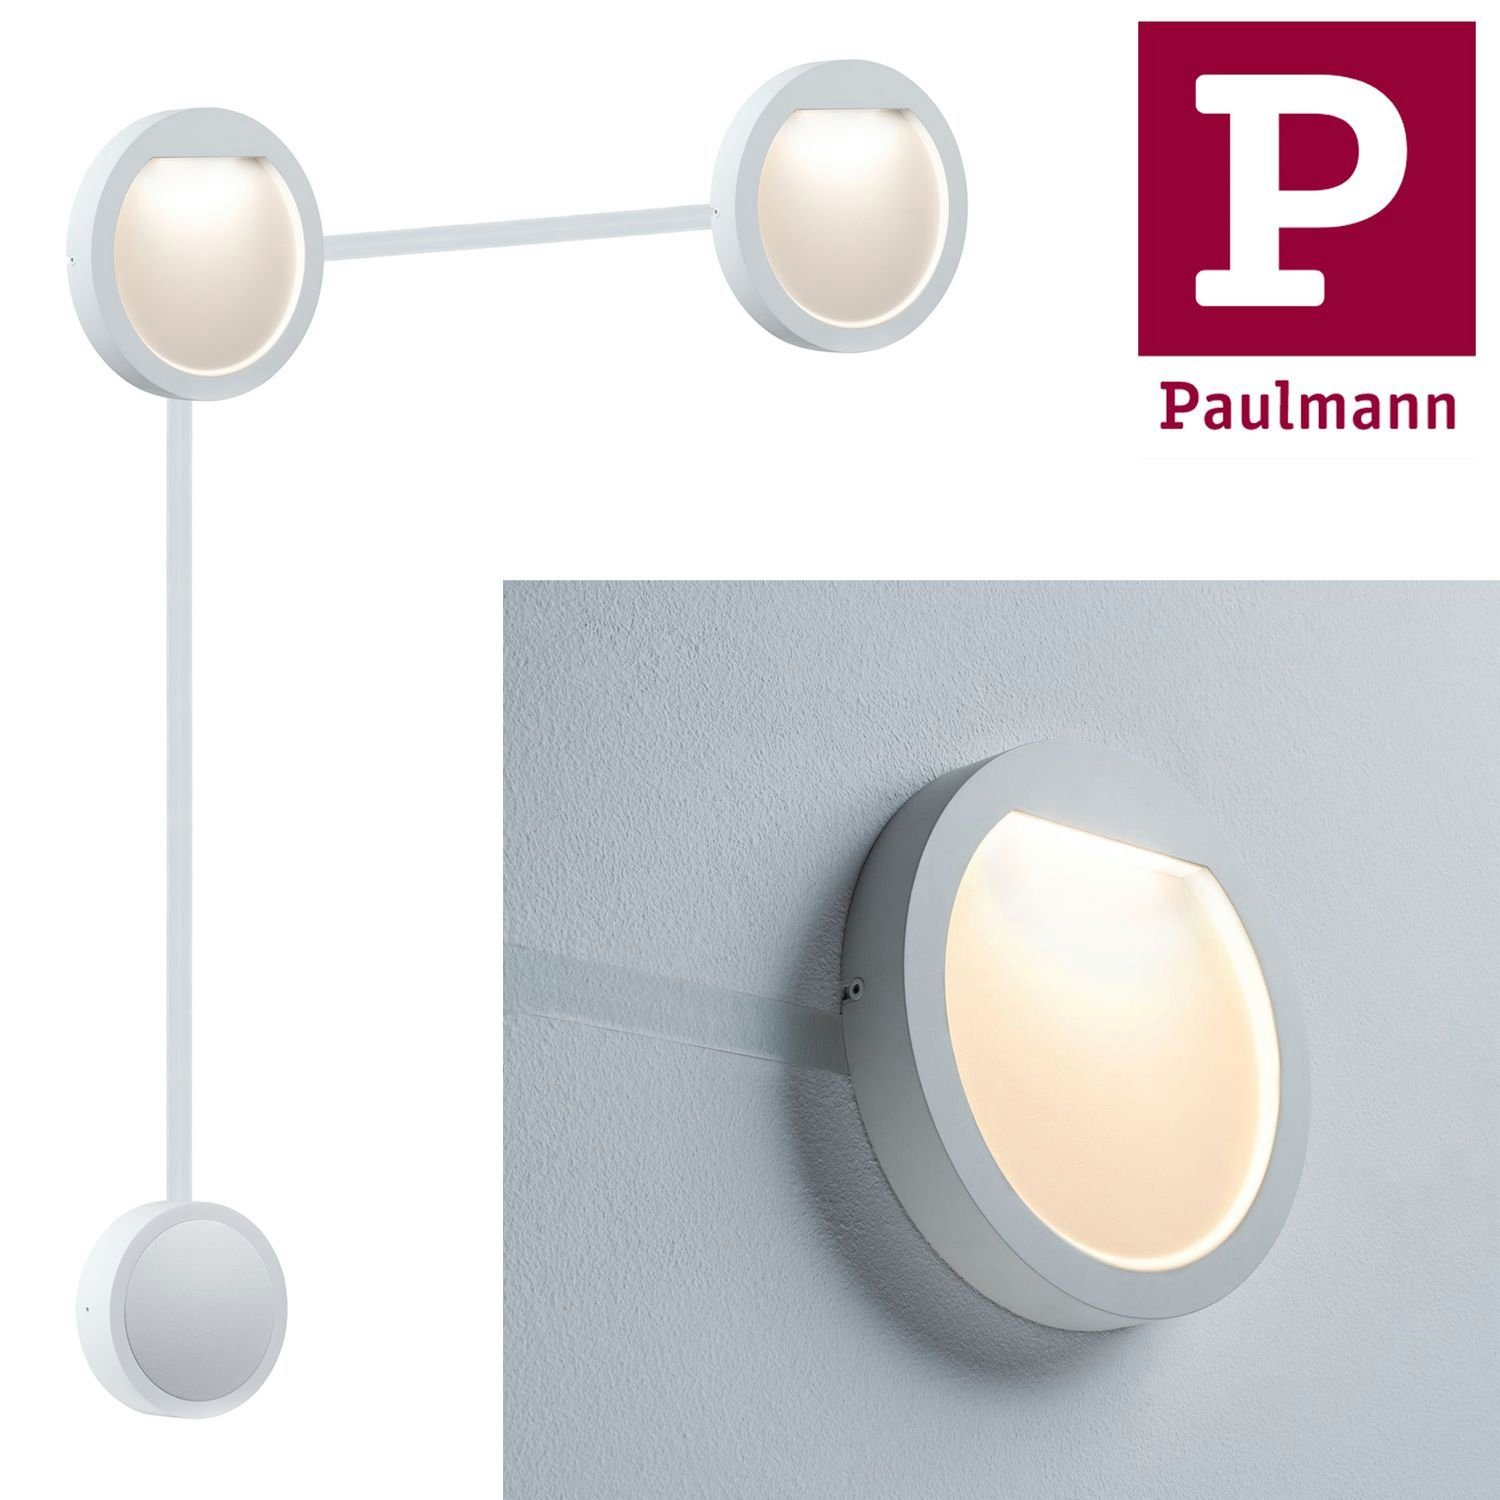 Paulmann Einbauleuchte Paulmann Special 160mm Weiß Weiß matt Flow LED matt, Einbauleuchte 160mm 2x2,3W Set Einbauleuchte Flow Special Set 2x2,3W Paulmann LED